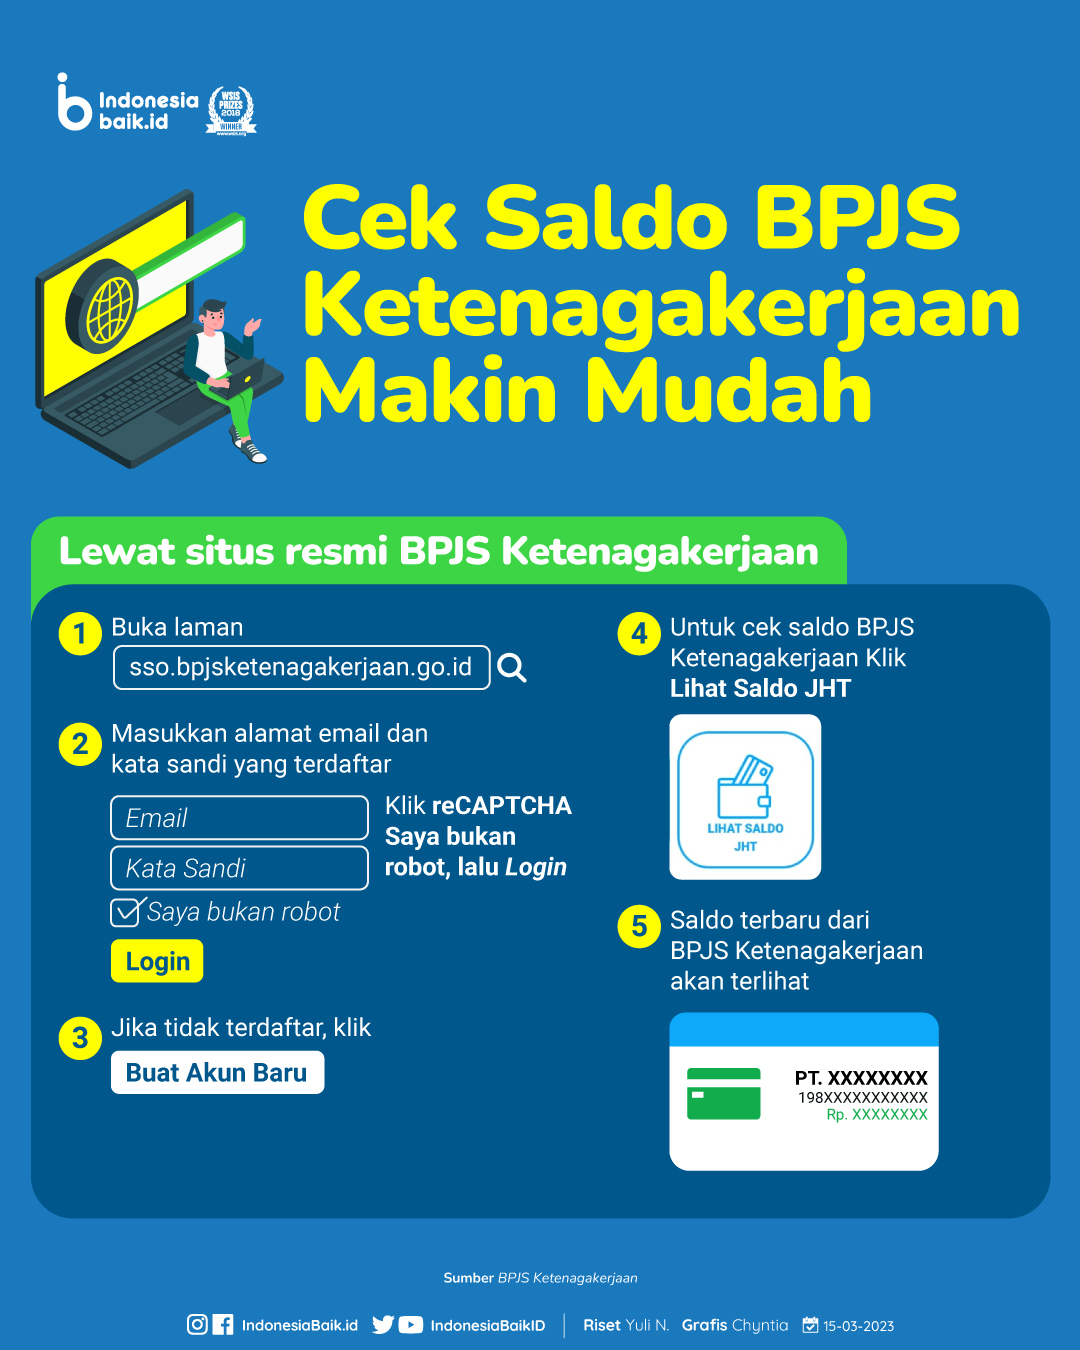 Cek Saldo BPJS Ketenagakerjaan Makin Mudah Indonesia Baik